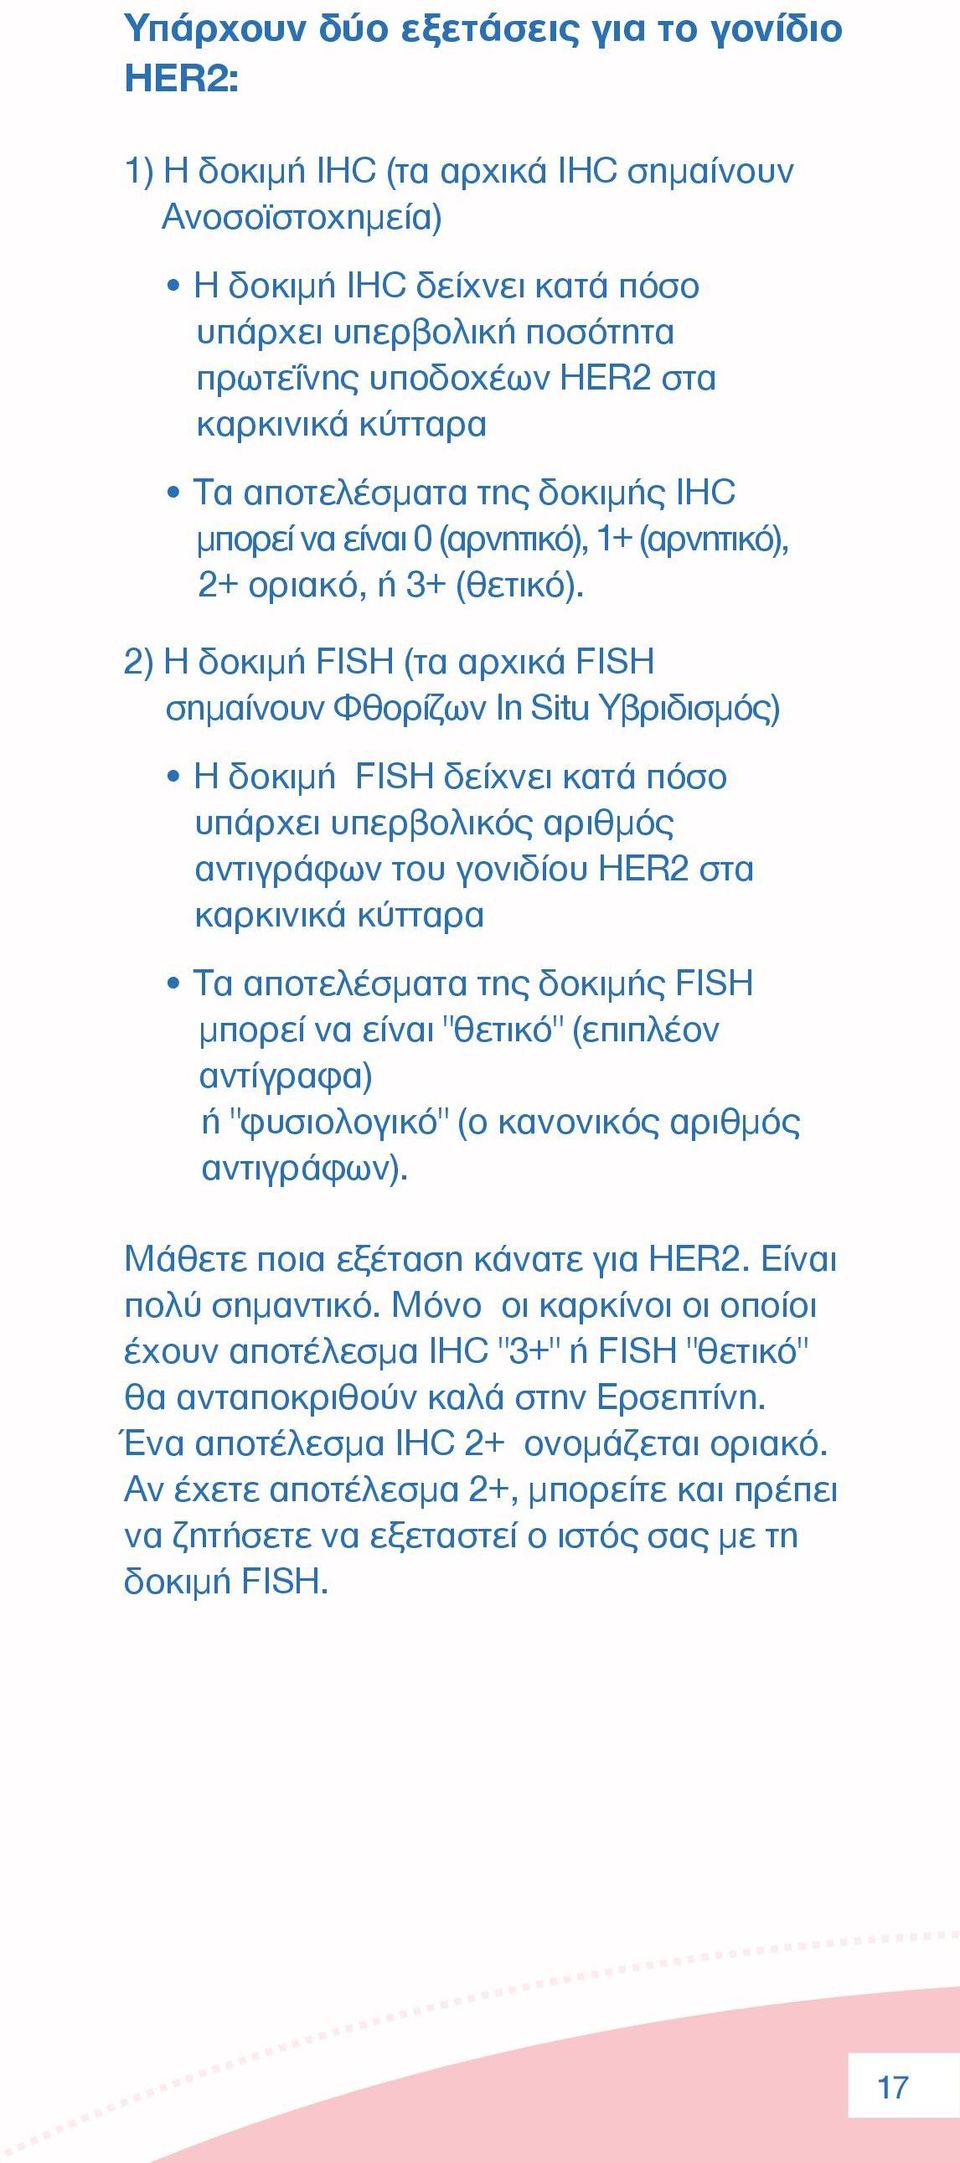 2) Η δοκιµή FISH (τα αρχικά FISH σηµαίνουν Φθορίζων In Situ Υβριδισµός) H δοκιµή FISH δείχνει κατά πόσο υπάρχει υπερβολικός αριθµός αντιγράφων του γονιδίου HER2 στα καρκινικά κύτταρα Τα αποτελέσµατα